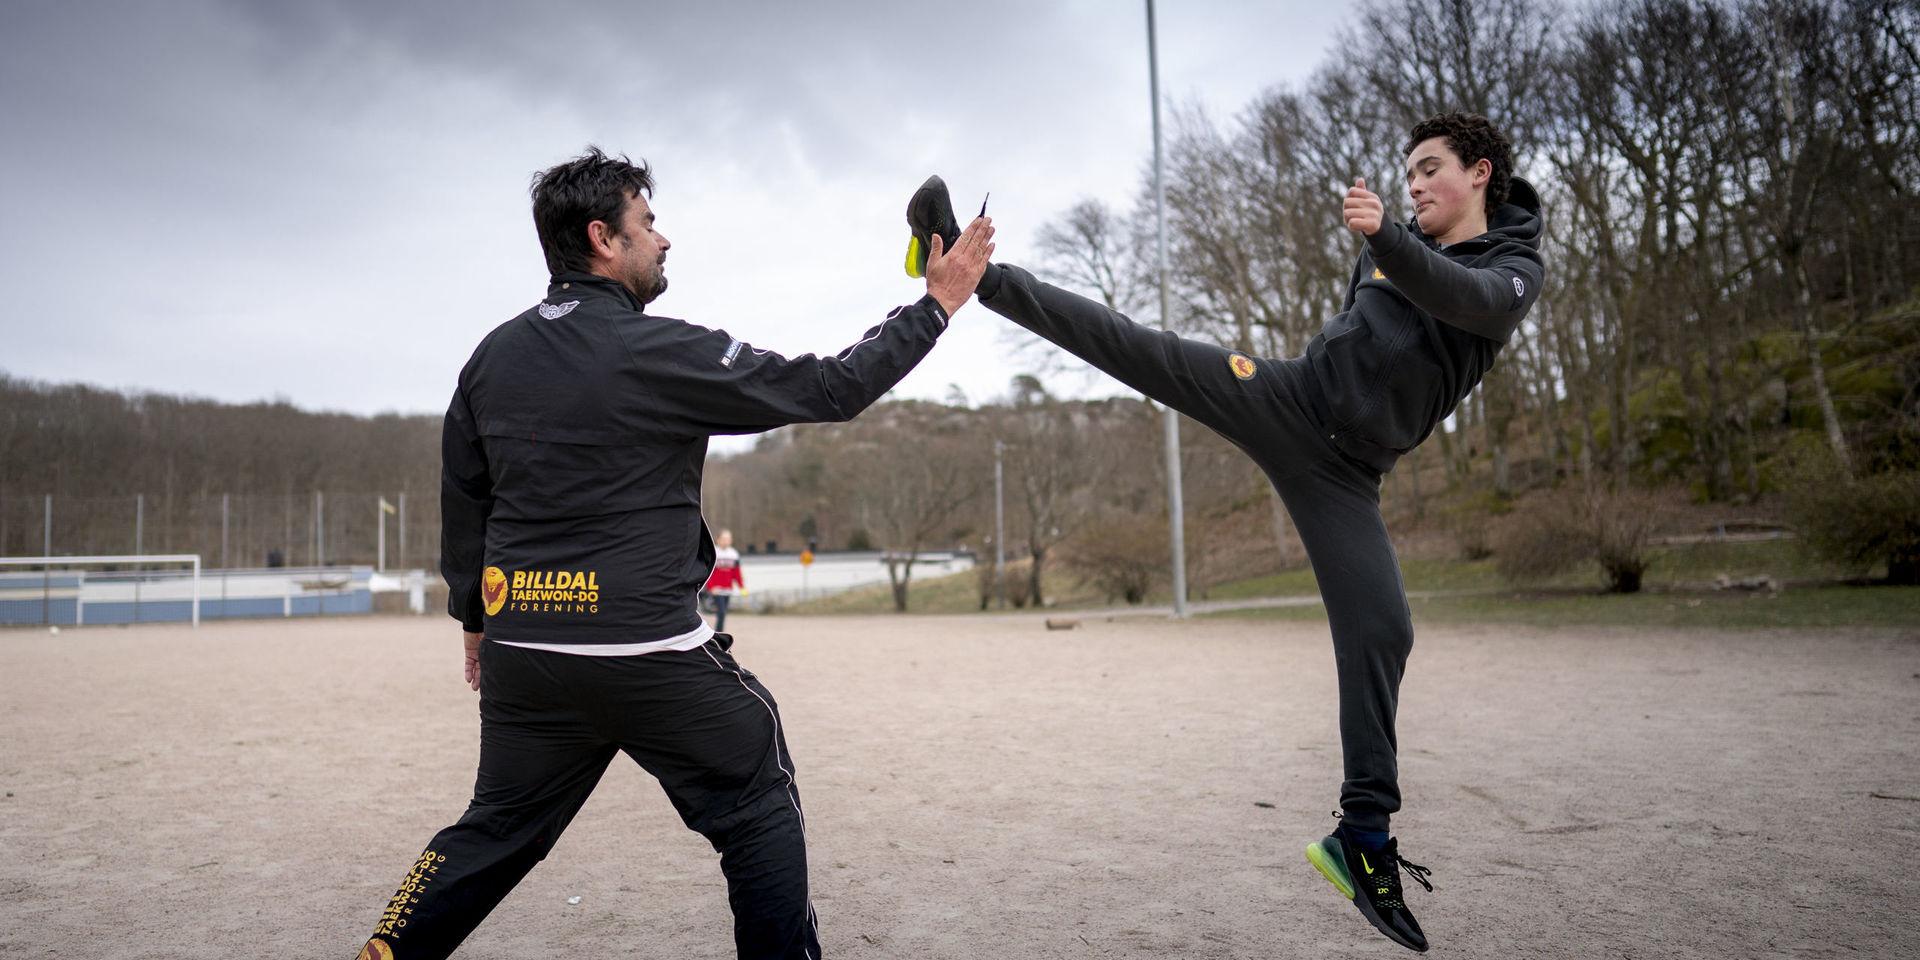 Mathias Hansson och sonen David Hansson Bärring i Billdal Taekwondo tränar utomhus på en grusplan då den vanliga träningen är stängd på grund av coronaviruset.